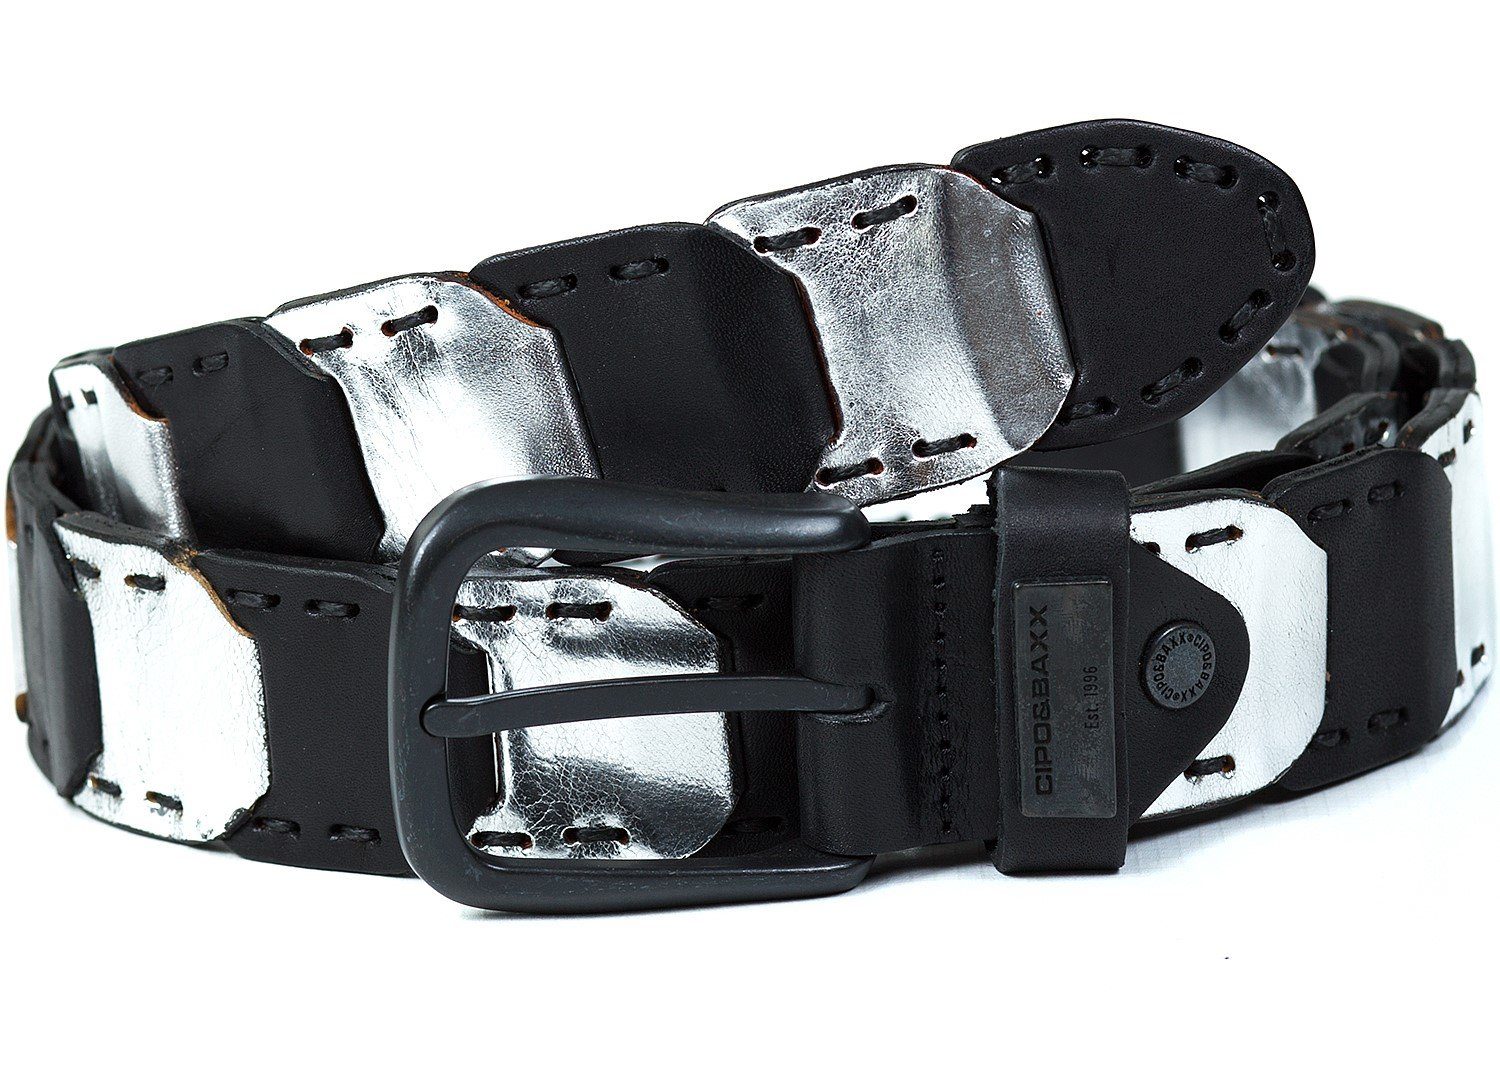 Cipo & schwarz Gürtel Ledergürtel Baxx im Design mit BA-CG104 Patch Metall besonderen